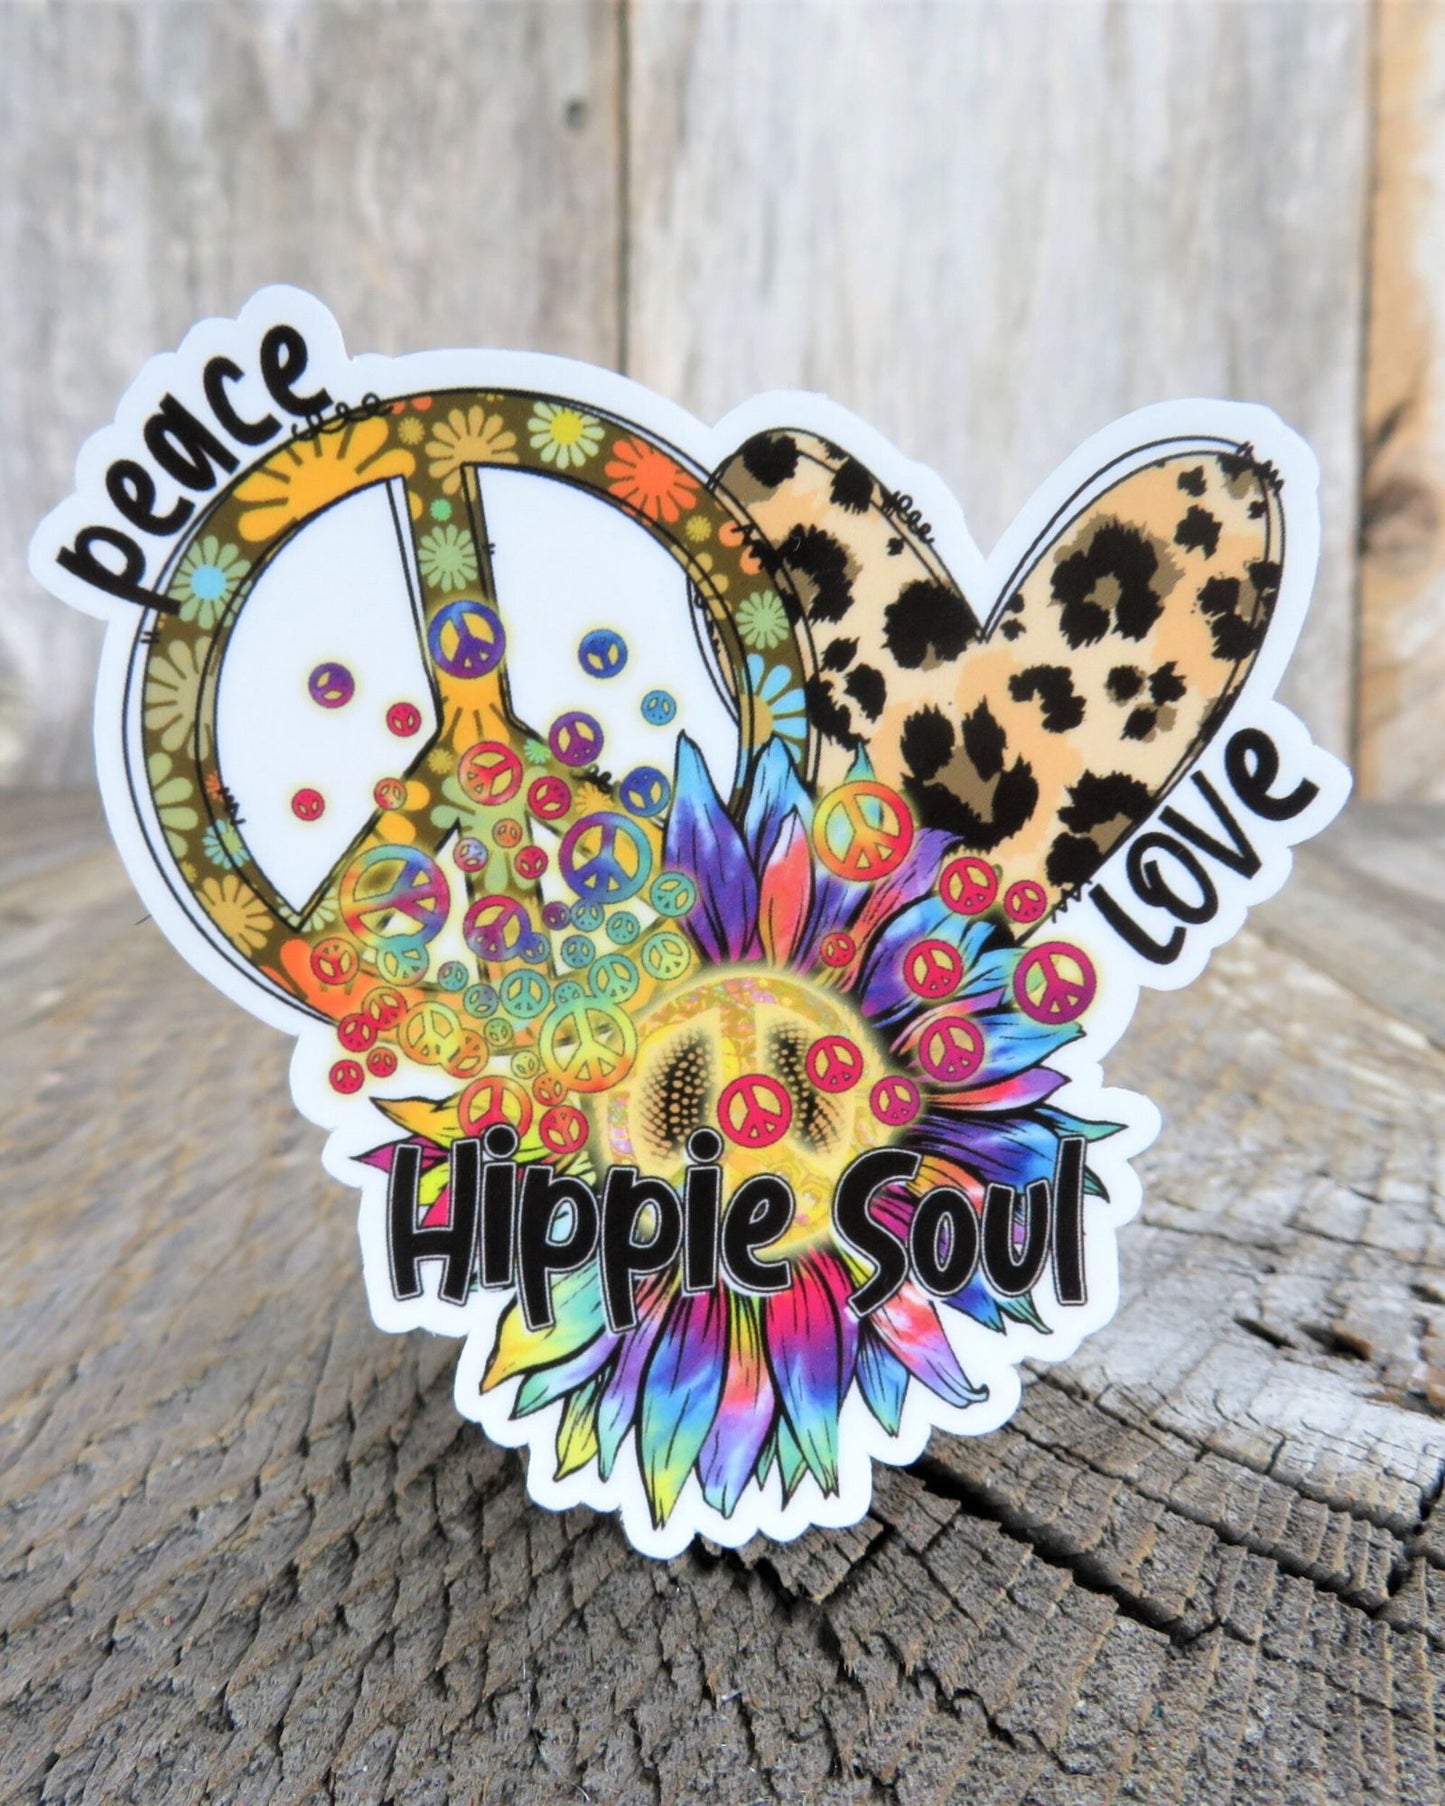 Peace Love Hippie Soul Sticker Peace Sign Heart Bright Colored Retro Hippie Flowers Waterproof Car Water Bottle Laptop